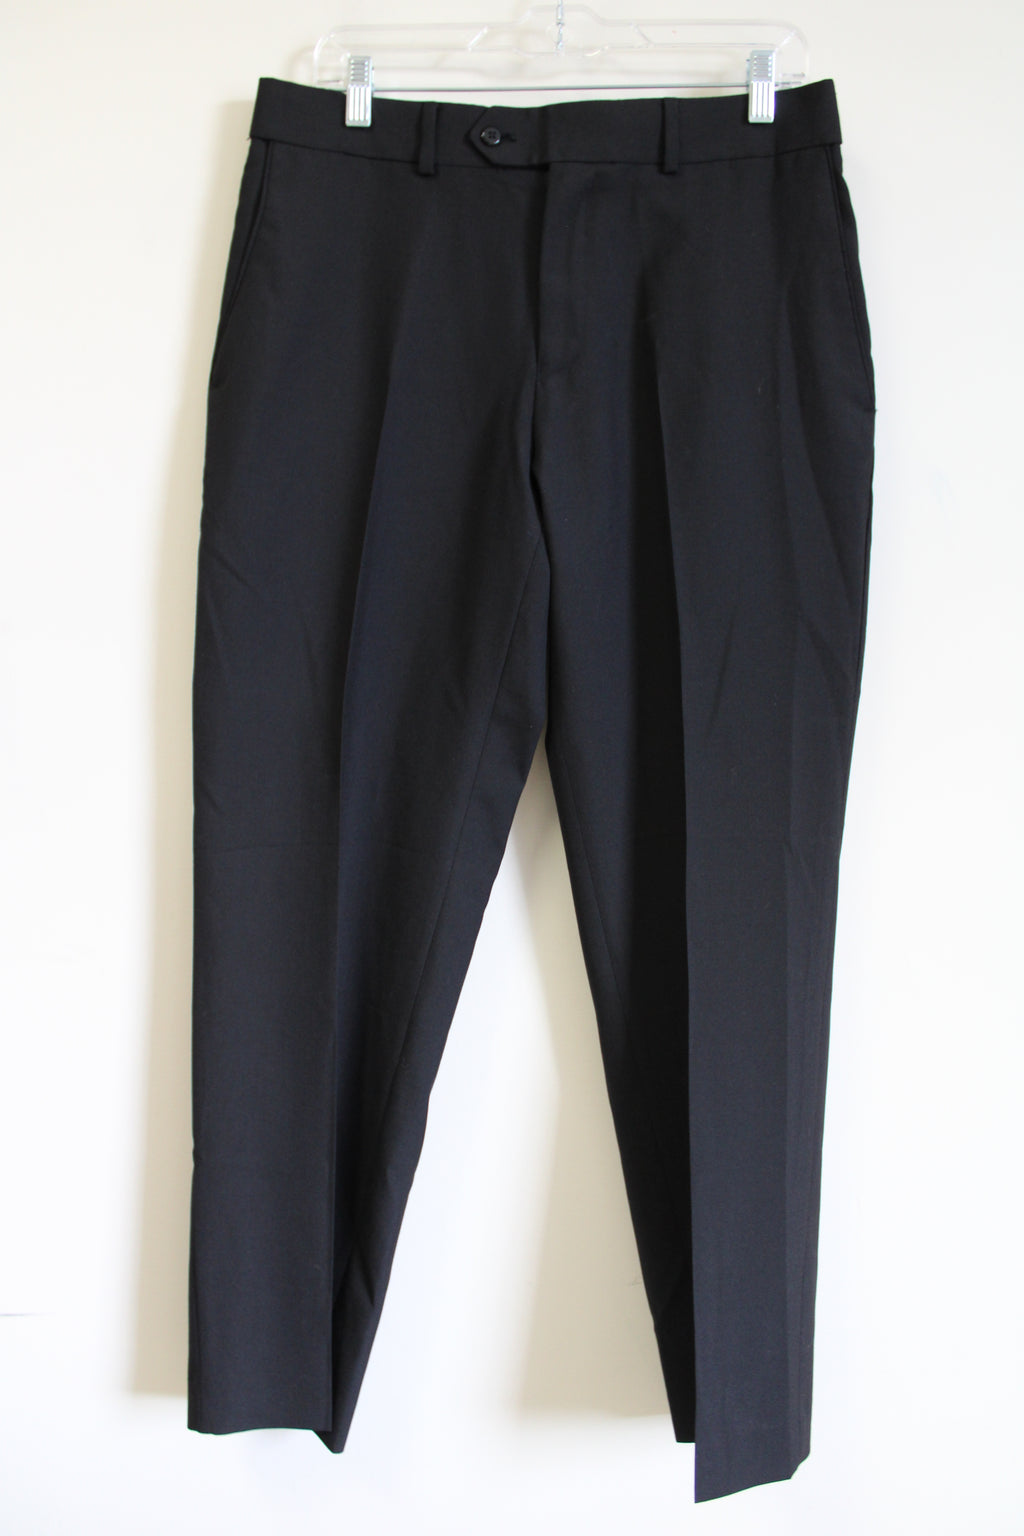 Stafford Classic Fit Black Pants | 32X30